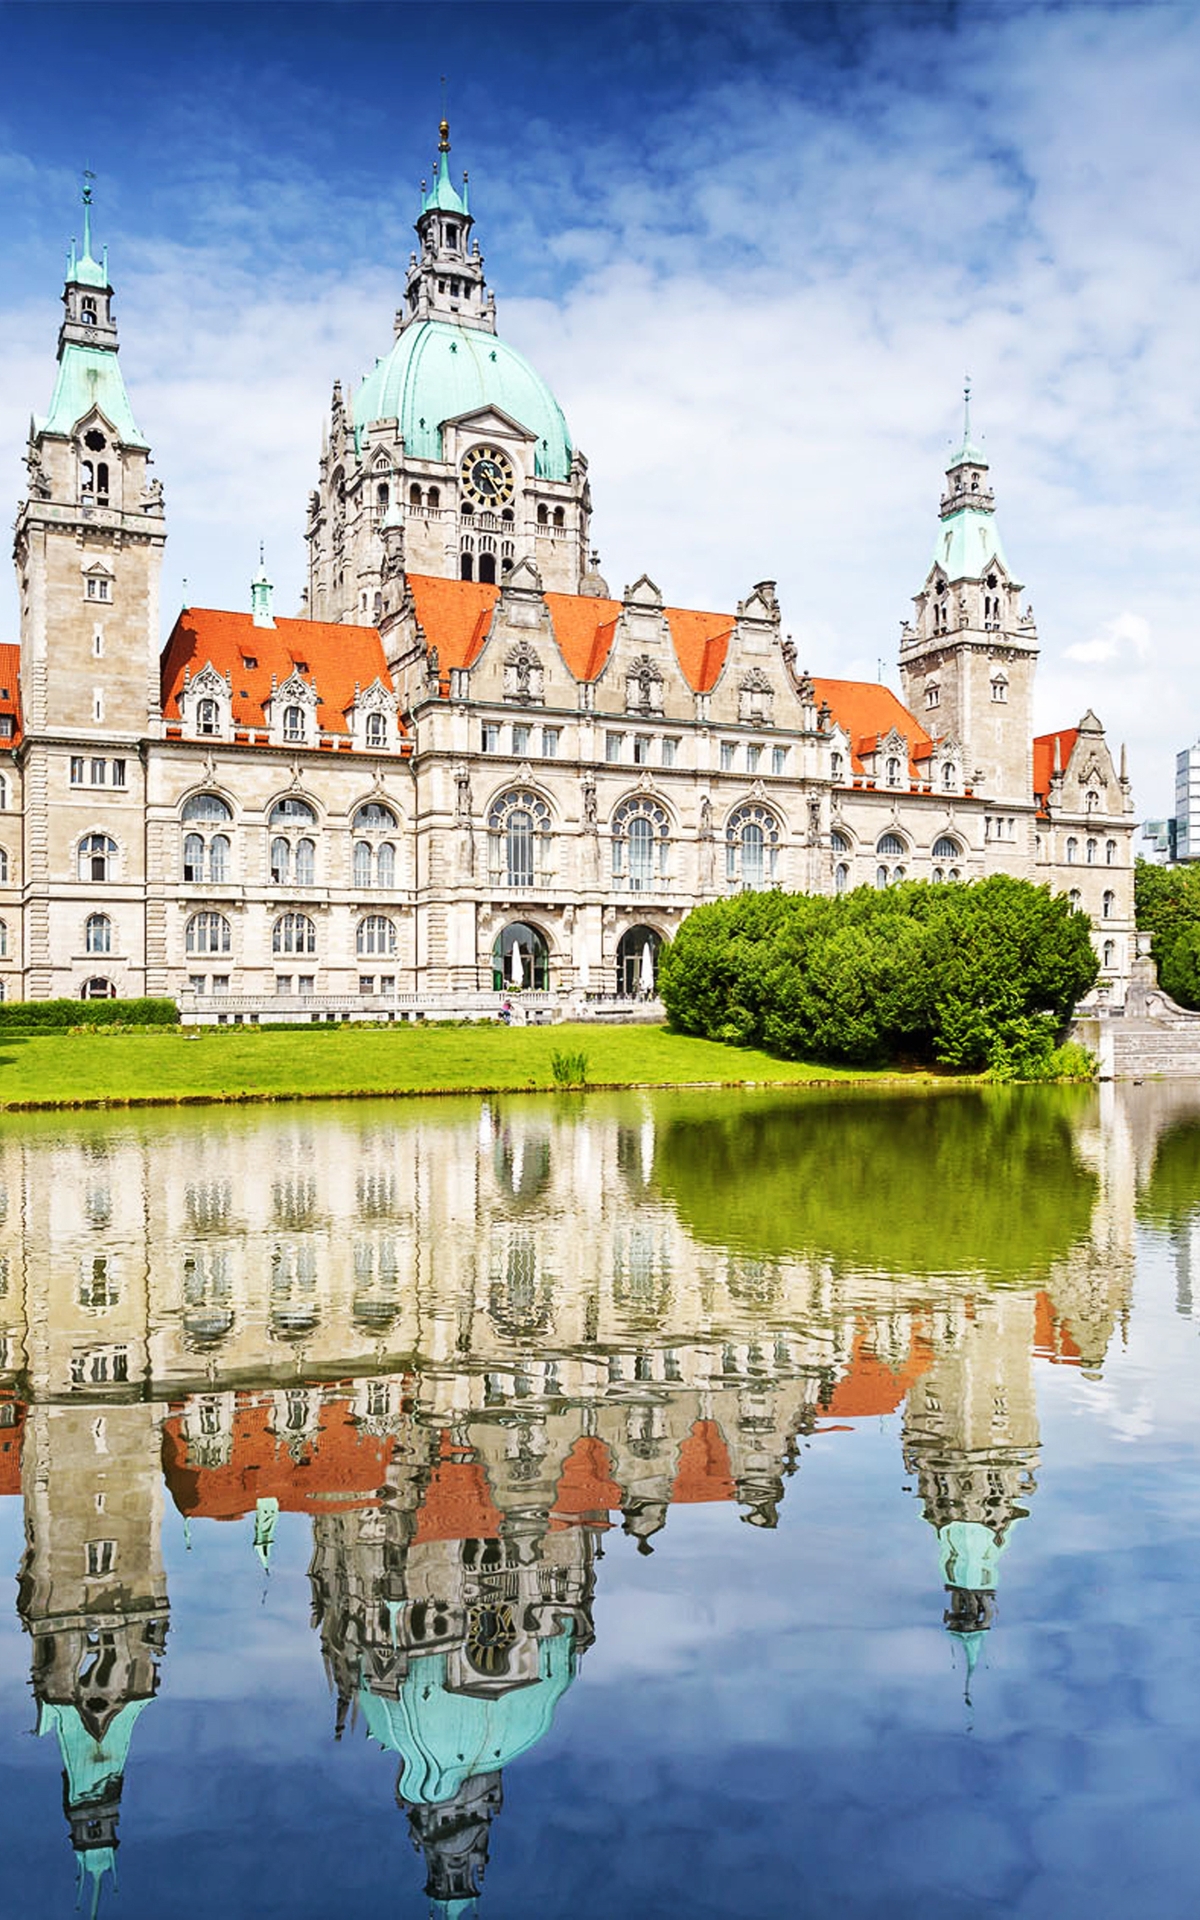 Картинка: Ганновер, Германия, Новая Ратуша, дворец, здание, отражение, вода, небо, облака, деревья